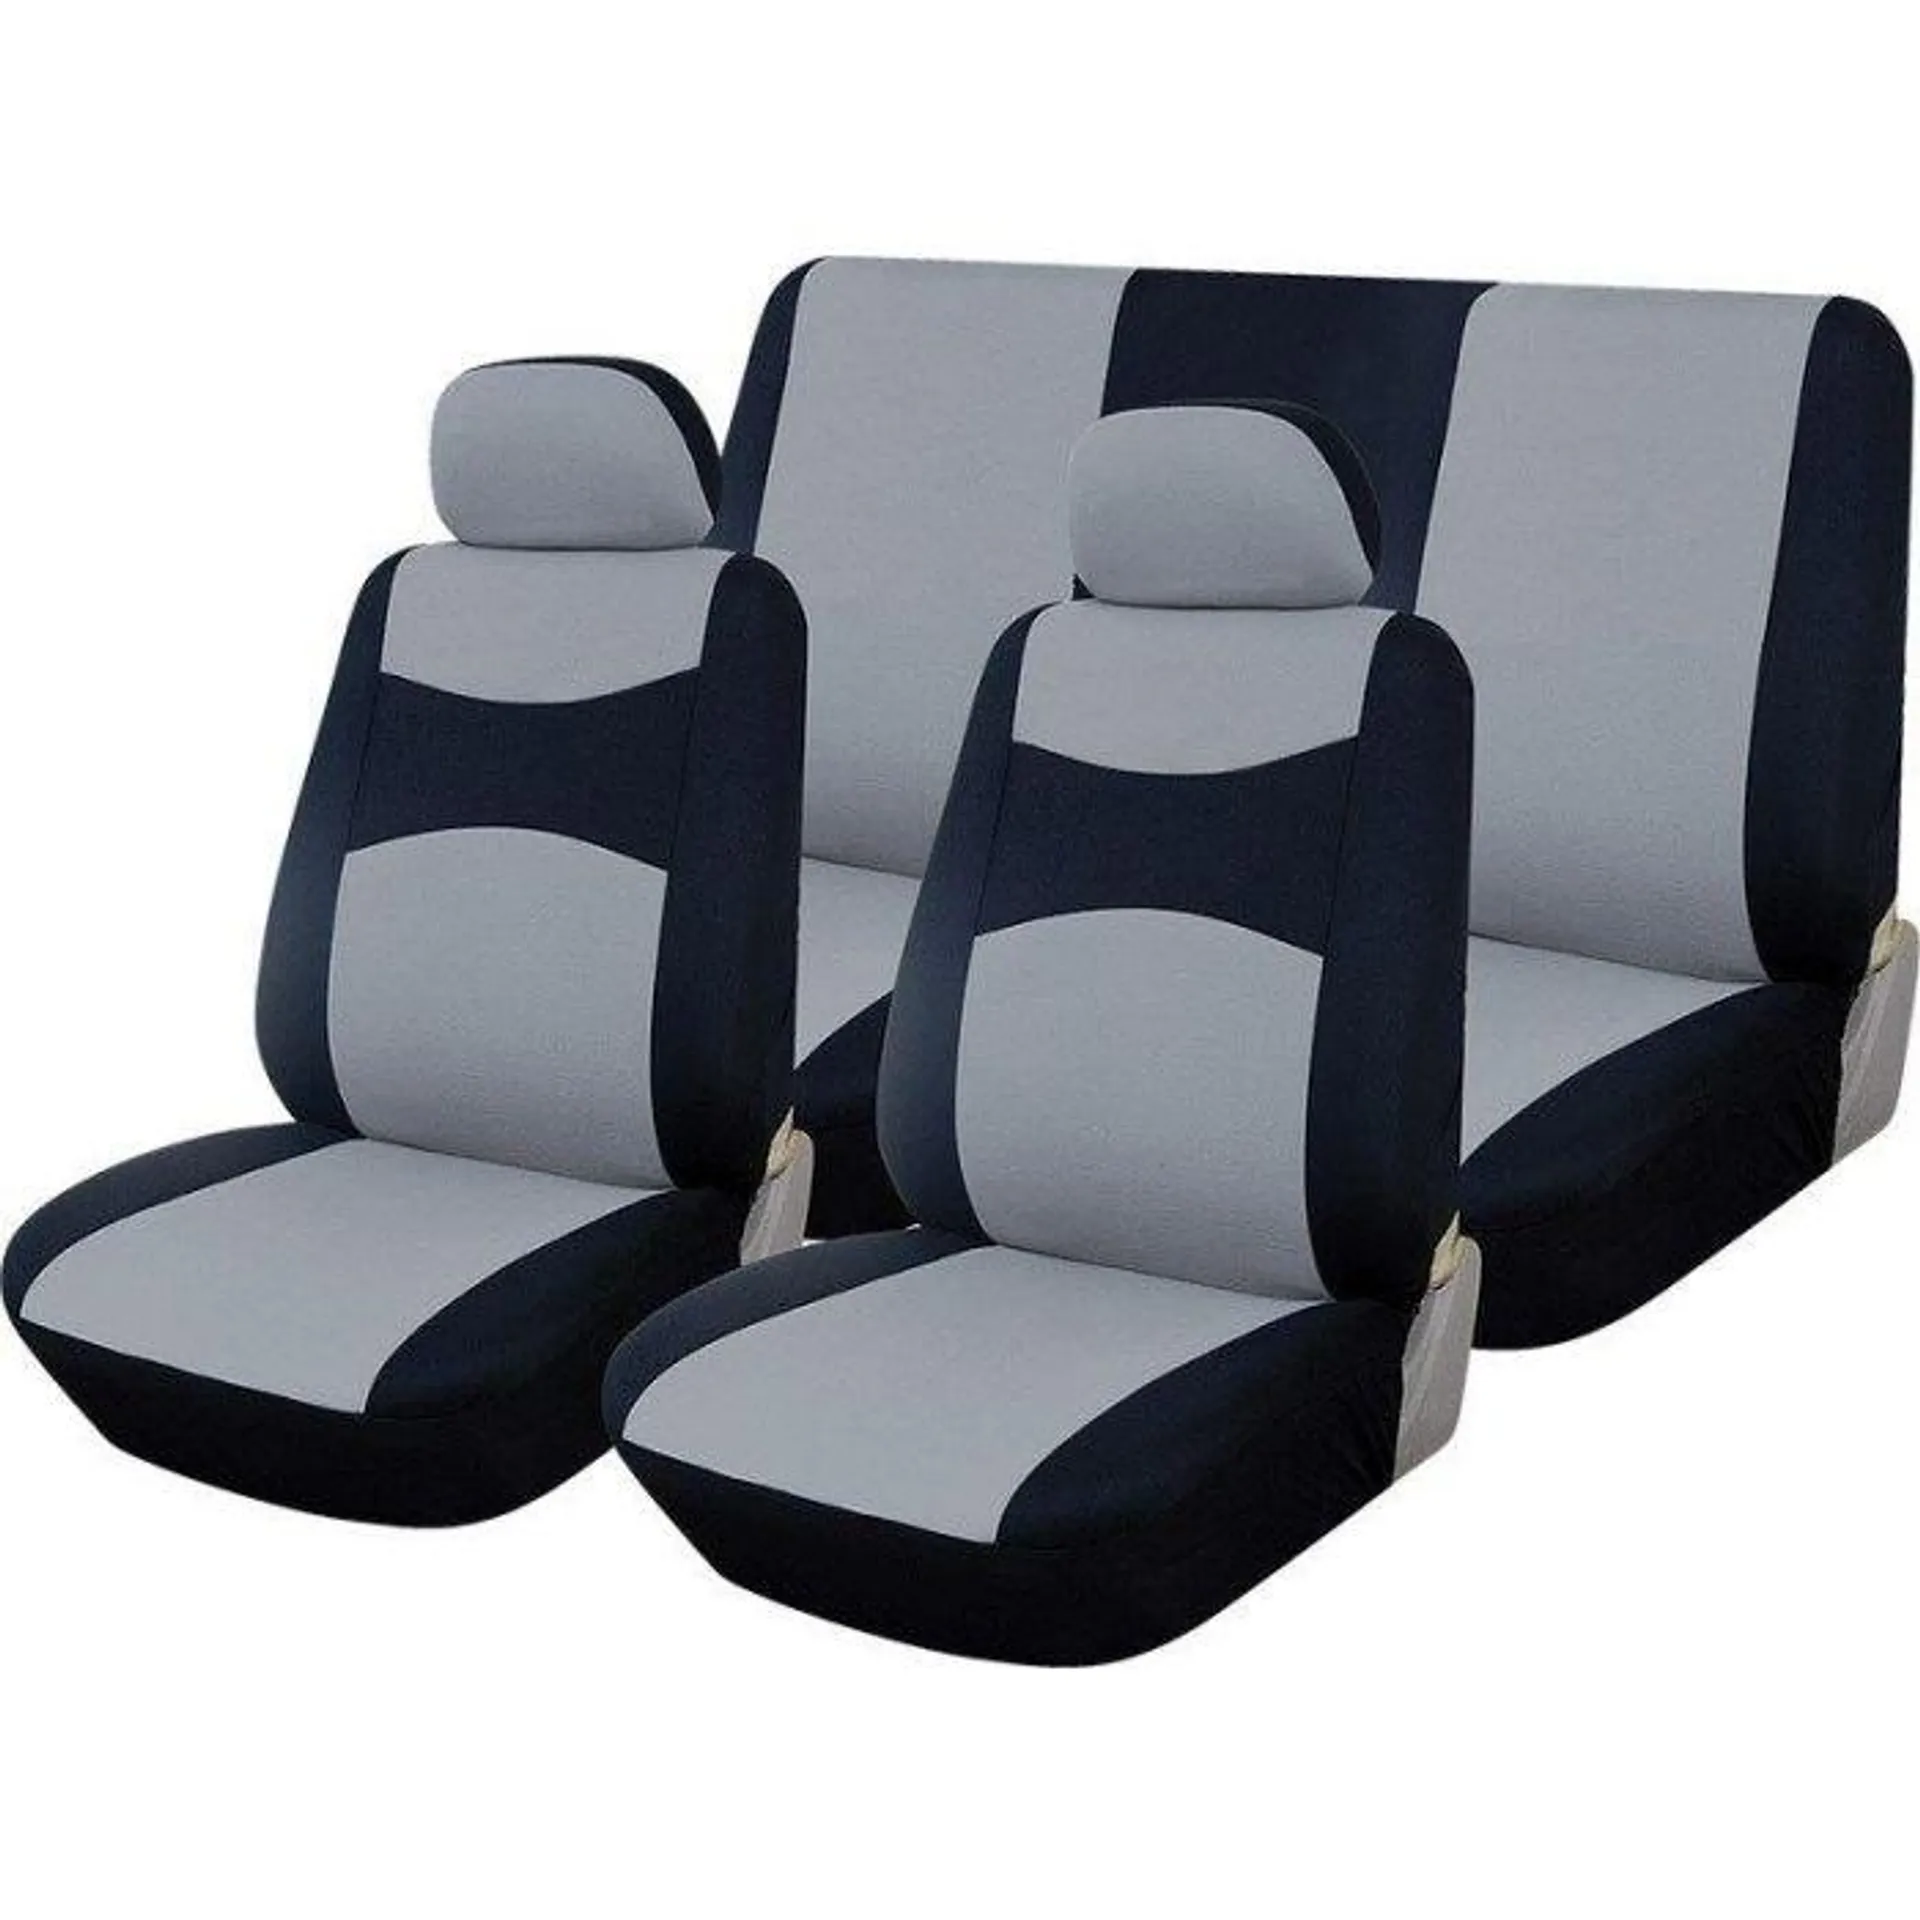 Autogear 6 Piece Promo Seat Cover Set Black / Silver